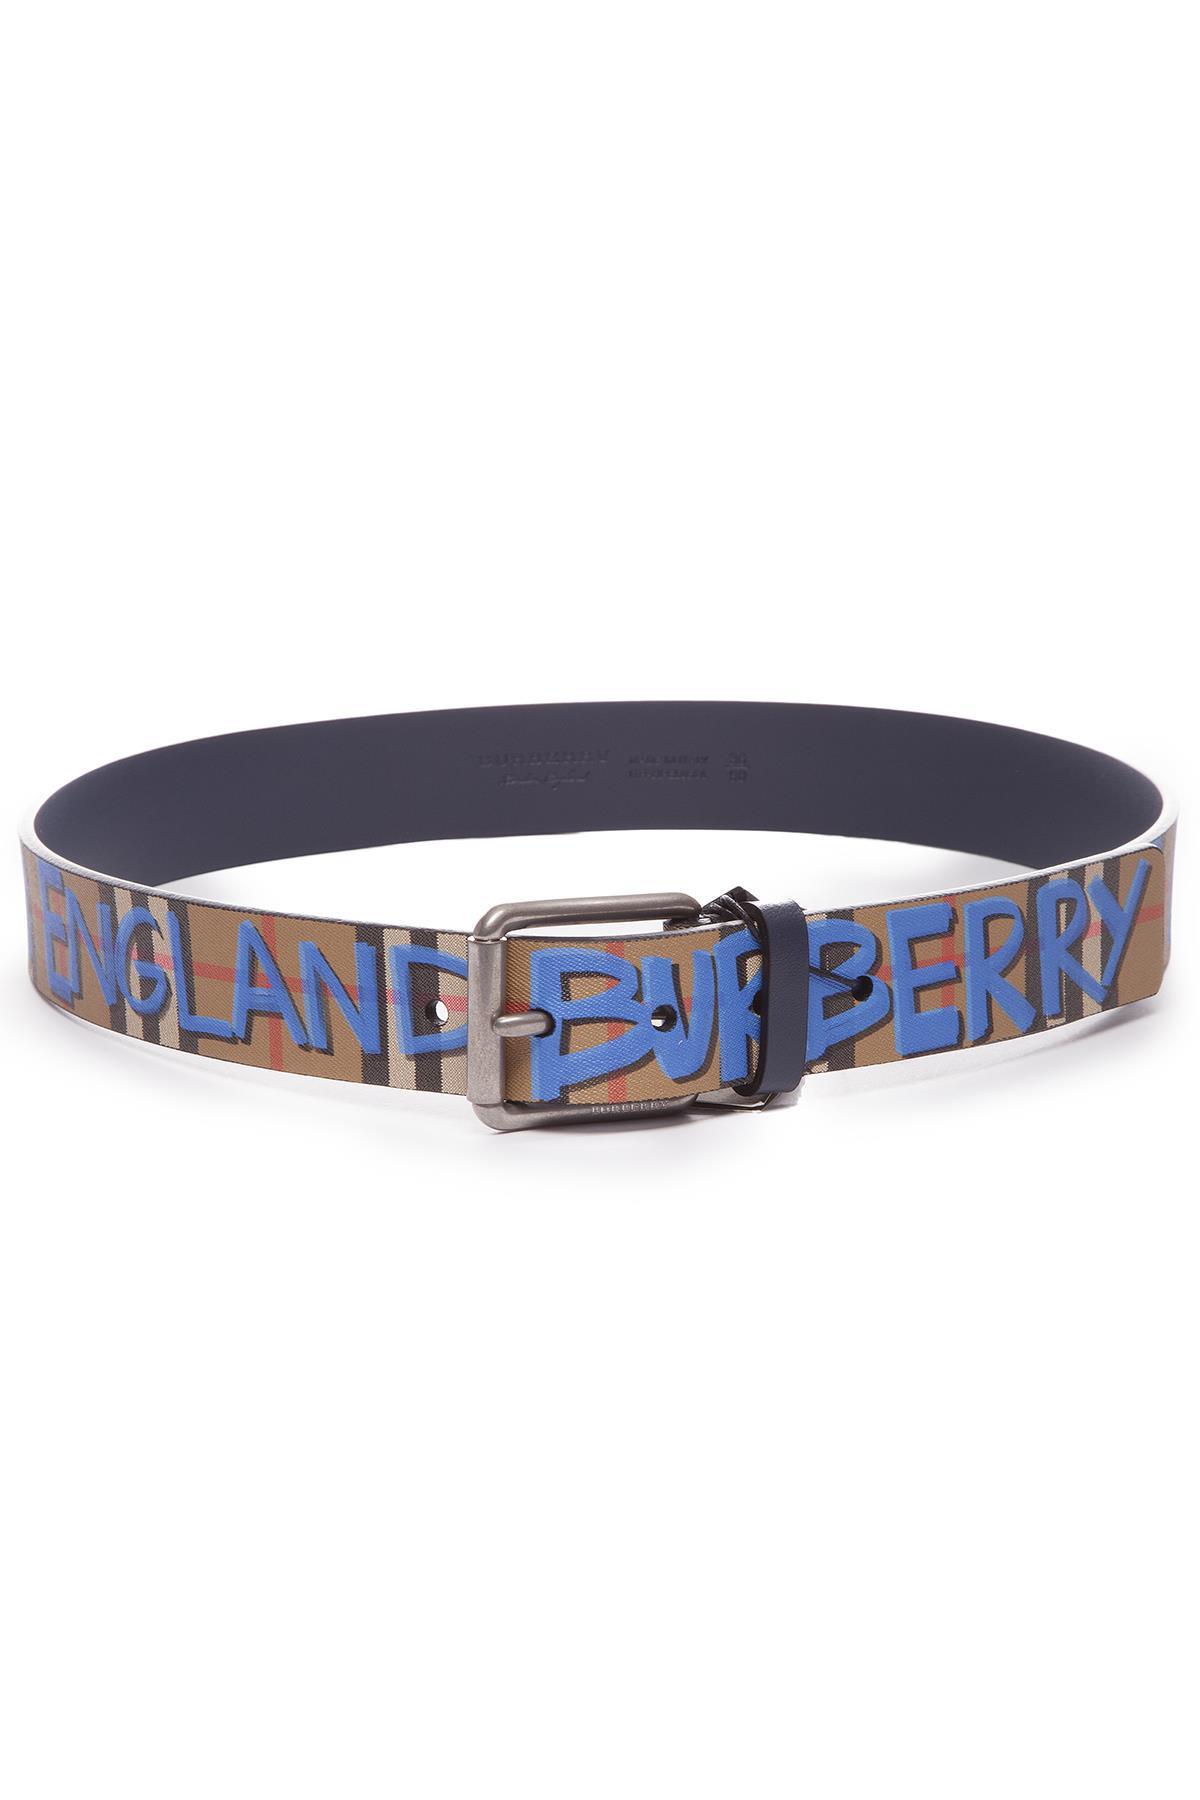 Blue Graffiti Burberry Belt - KibrisPDR